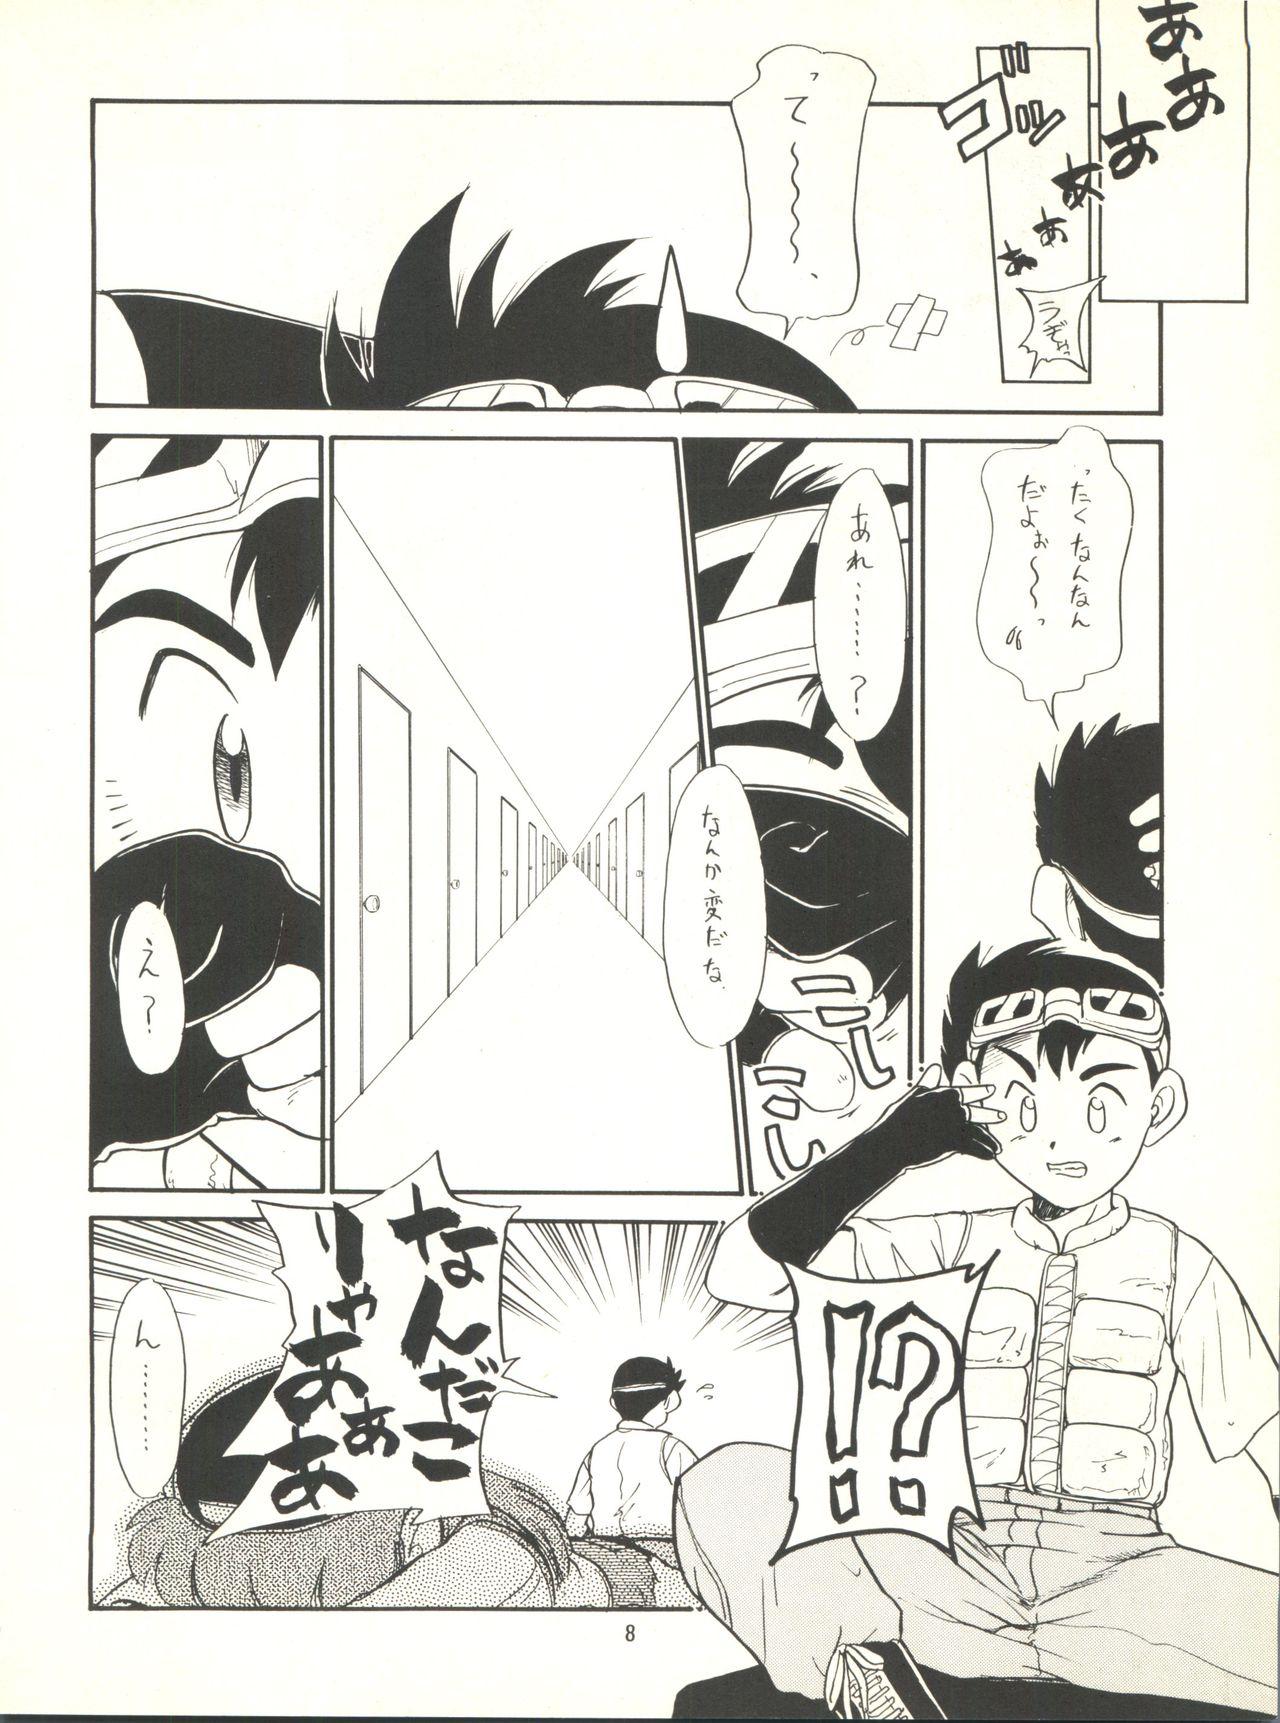 Ballbusting Nana-chan Kikiippatsu - Bakusou kyoudai lets and go Muscular - Page 8